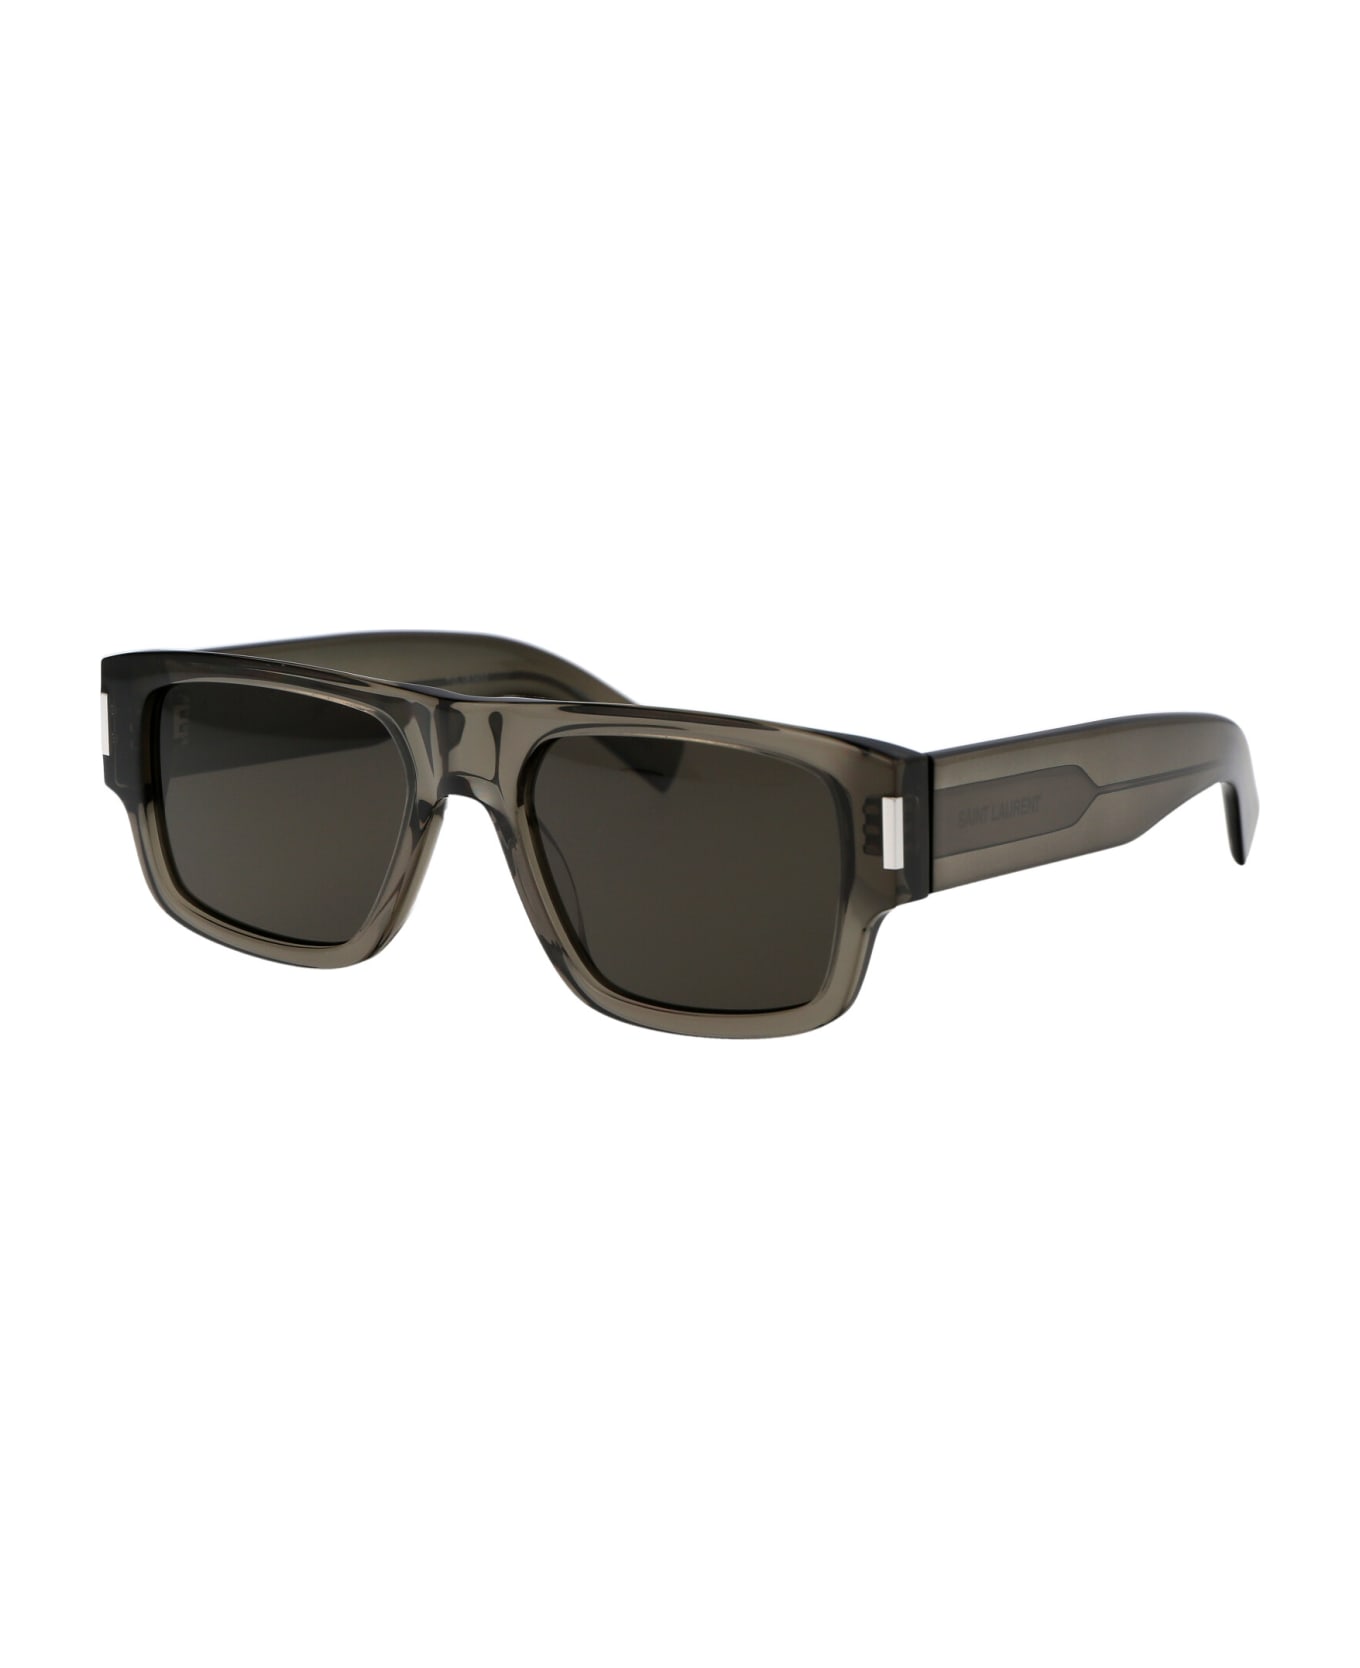 Saint Laurent Eyewear Sl 659 Sunglasses - 003 BROWN BROWN GREY